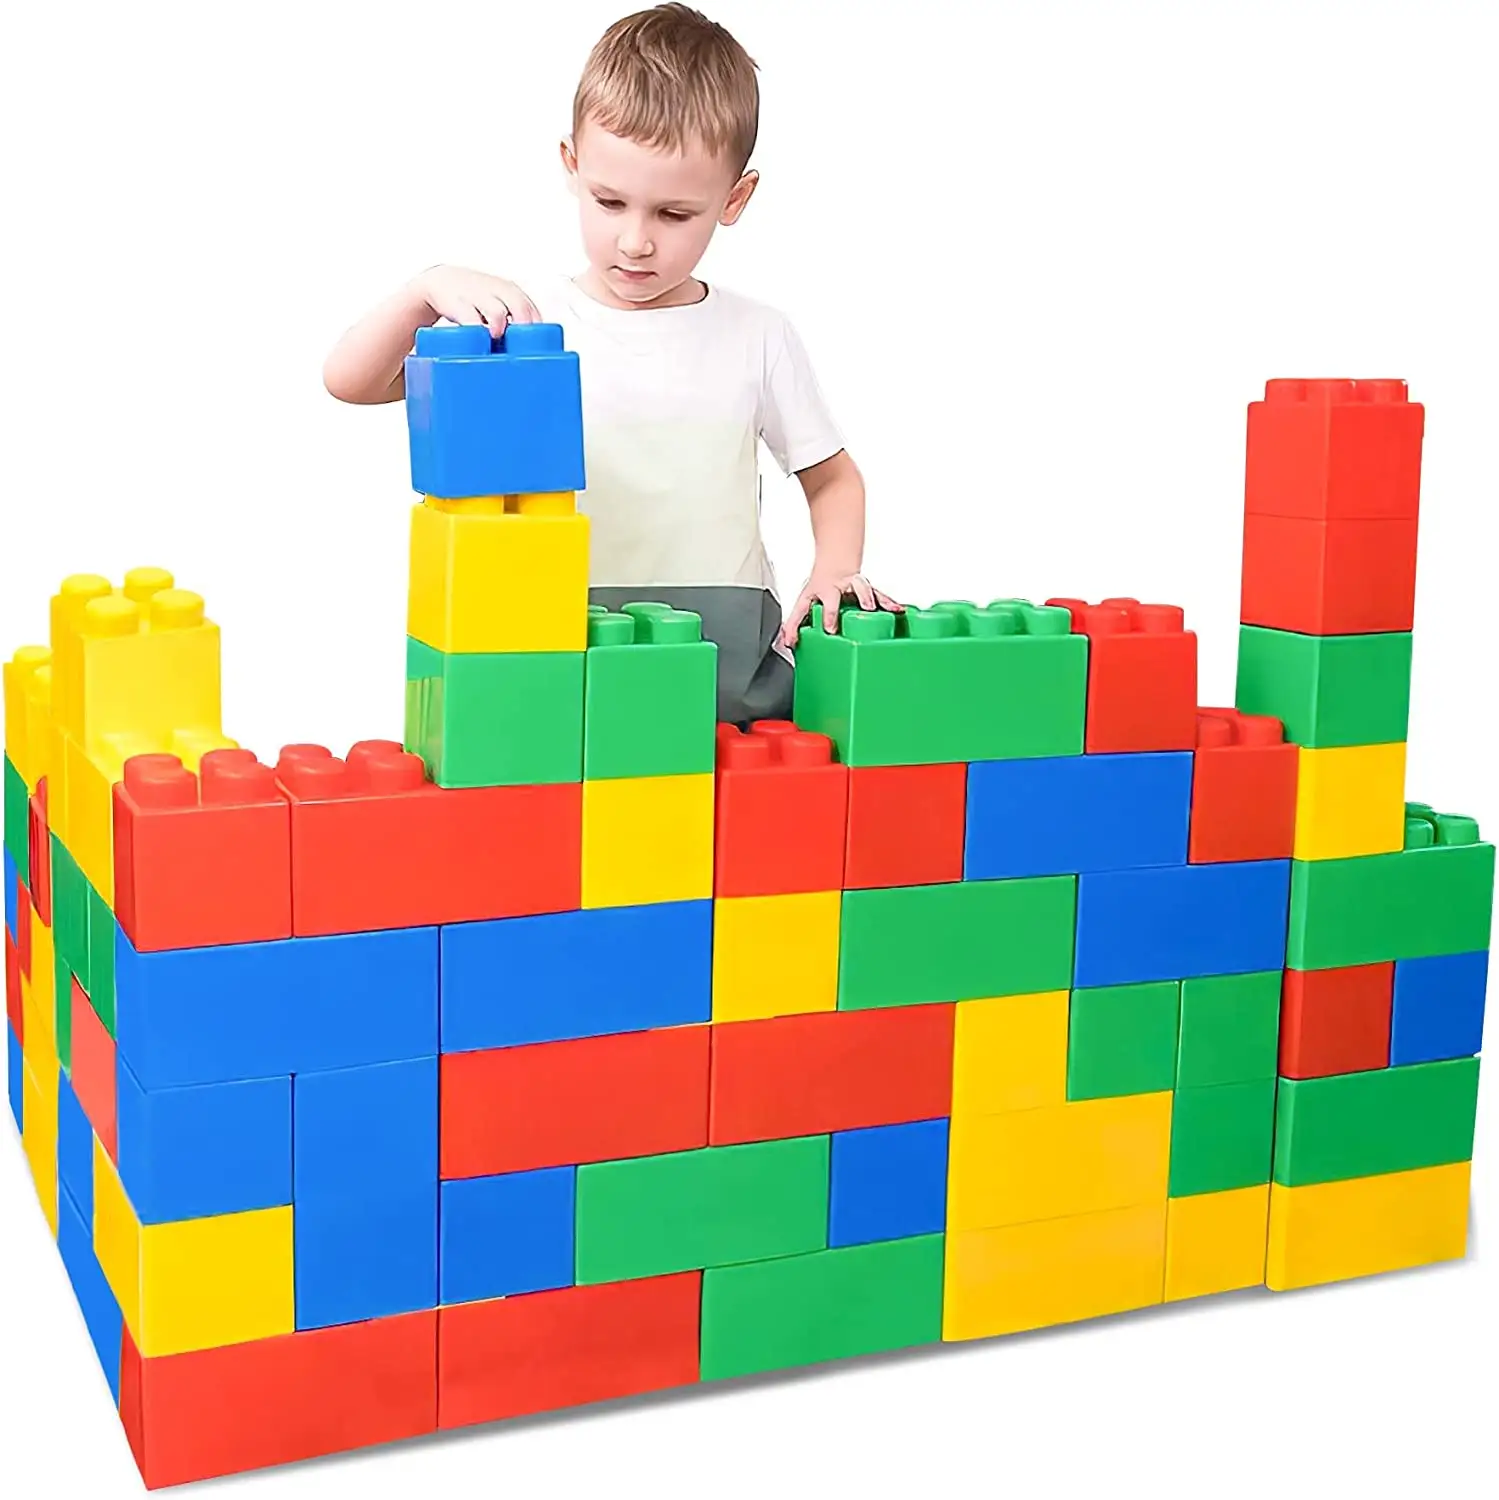 Blocchi Jumbo per bambini piccoli blocchi di plastica di grandi dimensioni per bambini mattoni impilabili giganti per bambini